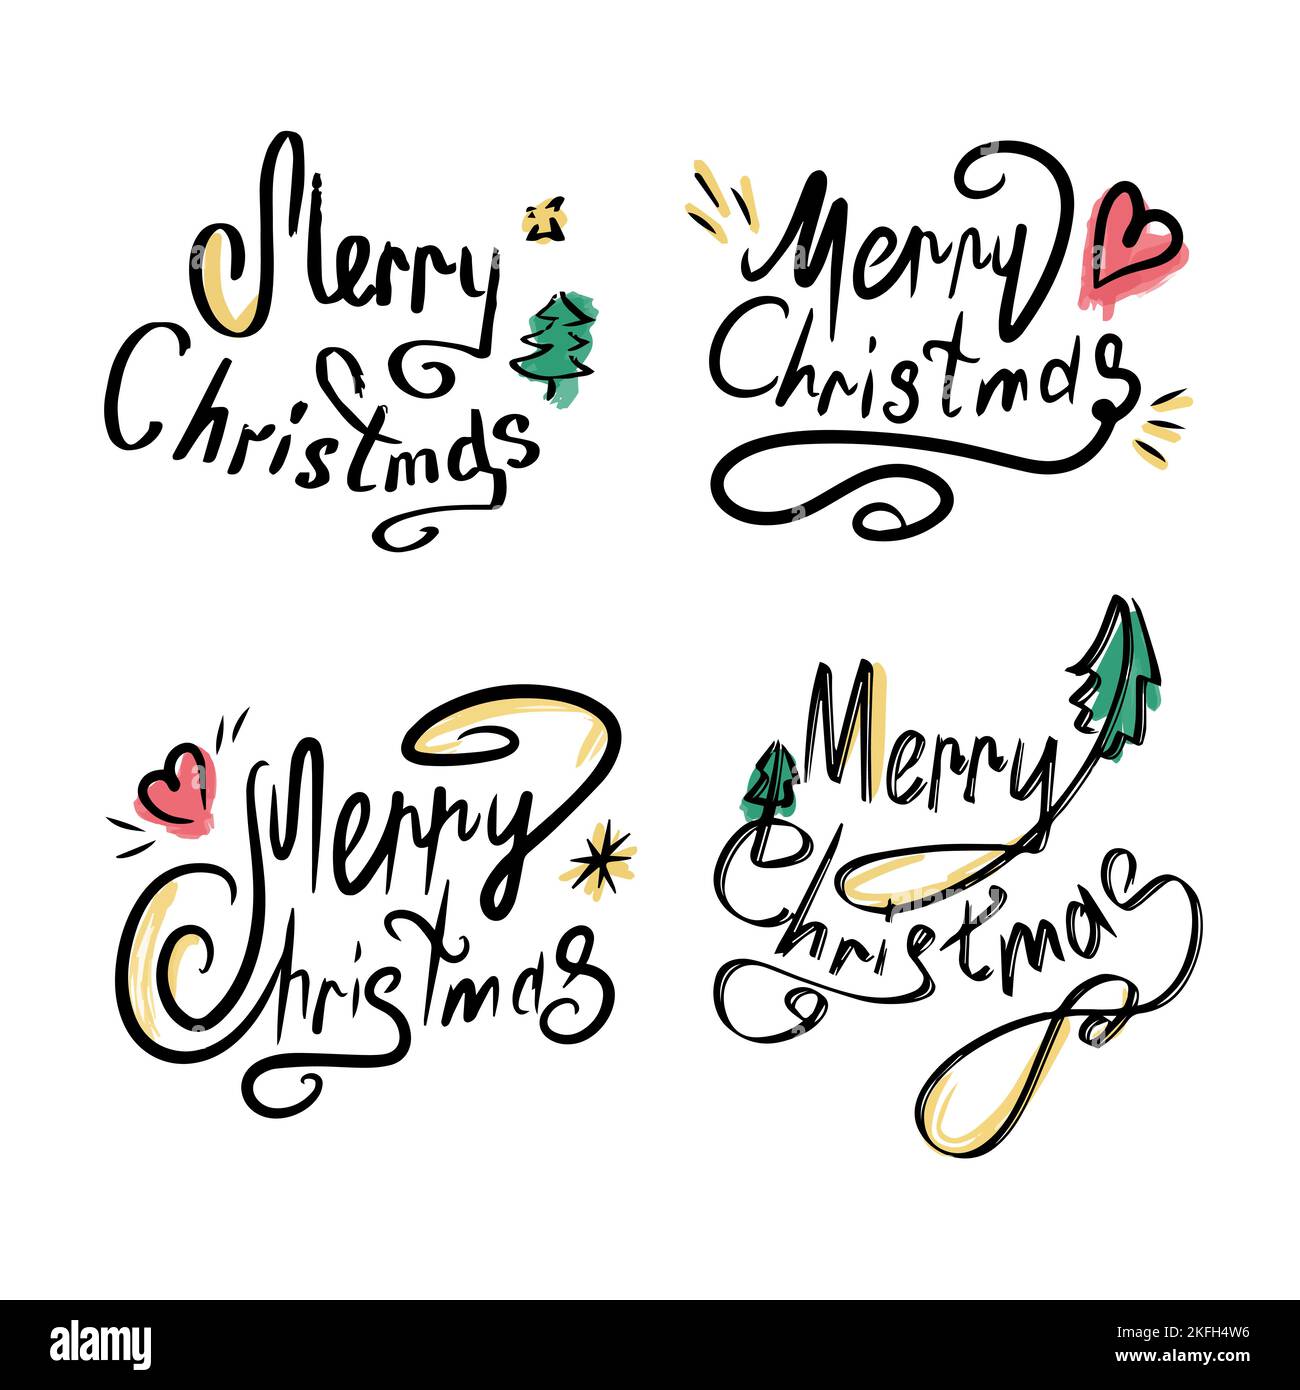 Satz kalligrafischer Schriftzeichen Frohe Weihnachten. Wunderschöne schwarze Schrift mit Wirbeln und farbigen Elementen. Designvorlage für Einladungen, Postkarten Stock Vektor